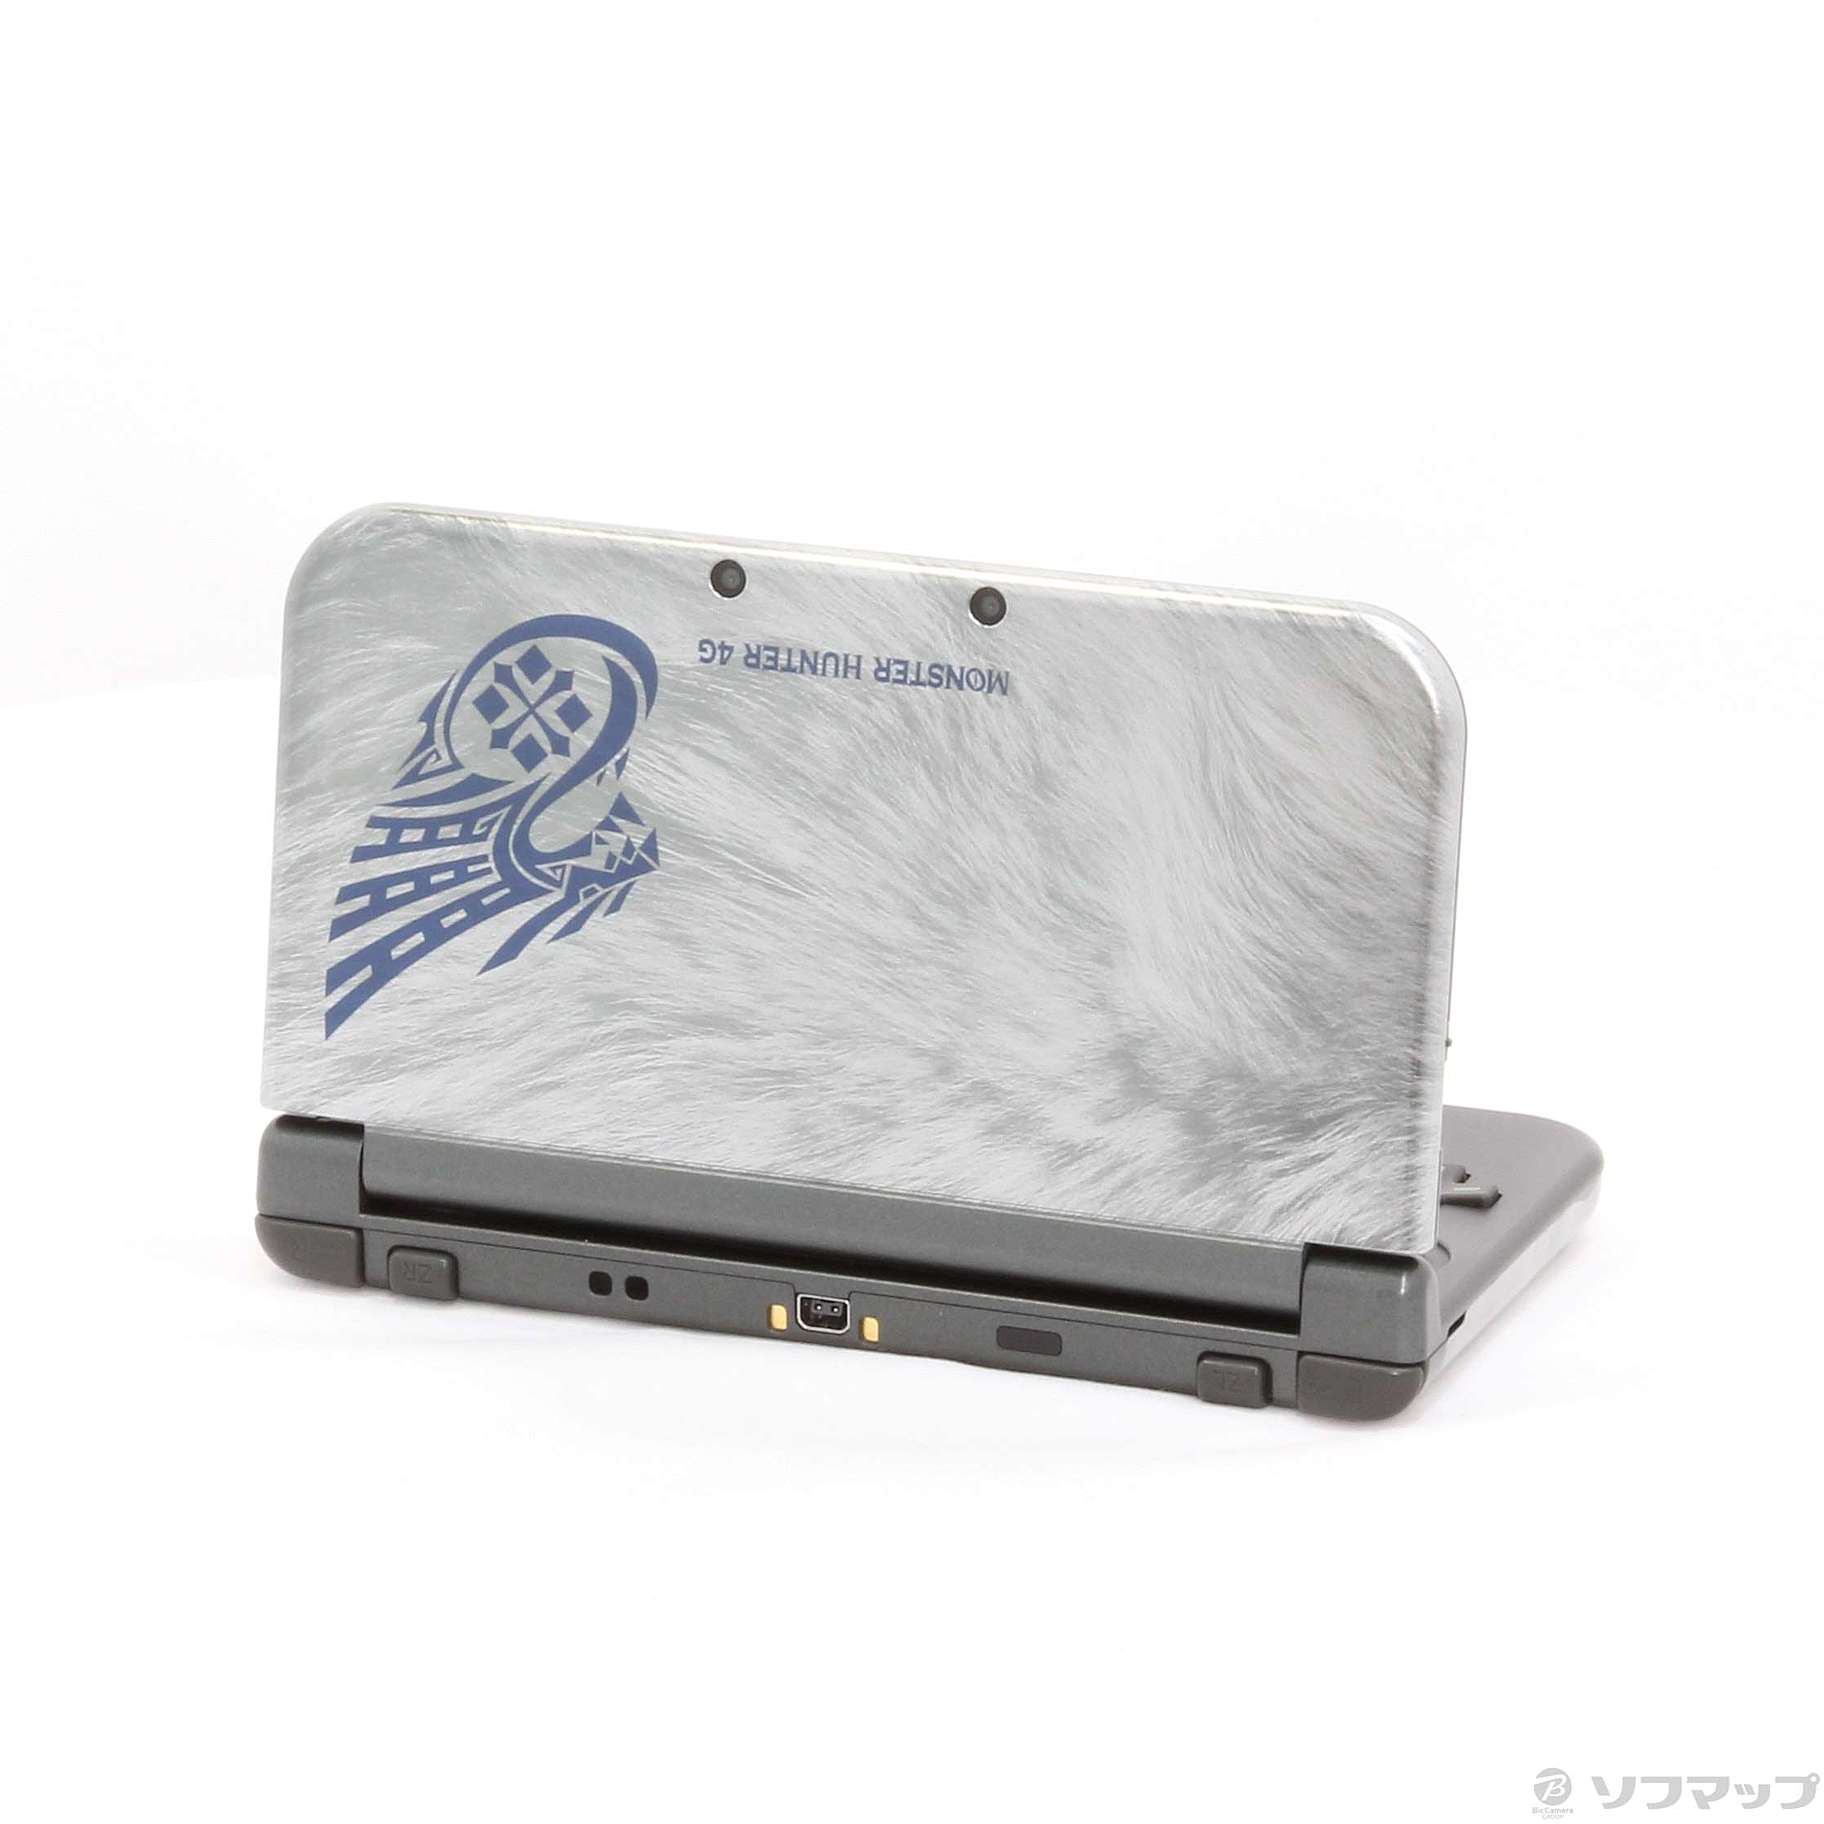 公式商品 ニンテンドー 3DS LL モンスターハンター4G 携帯用ゲーム本体